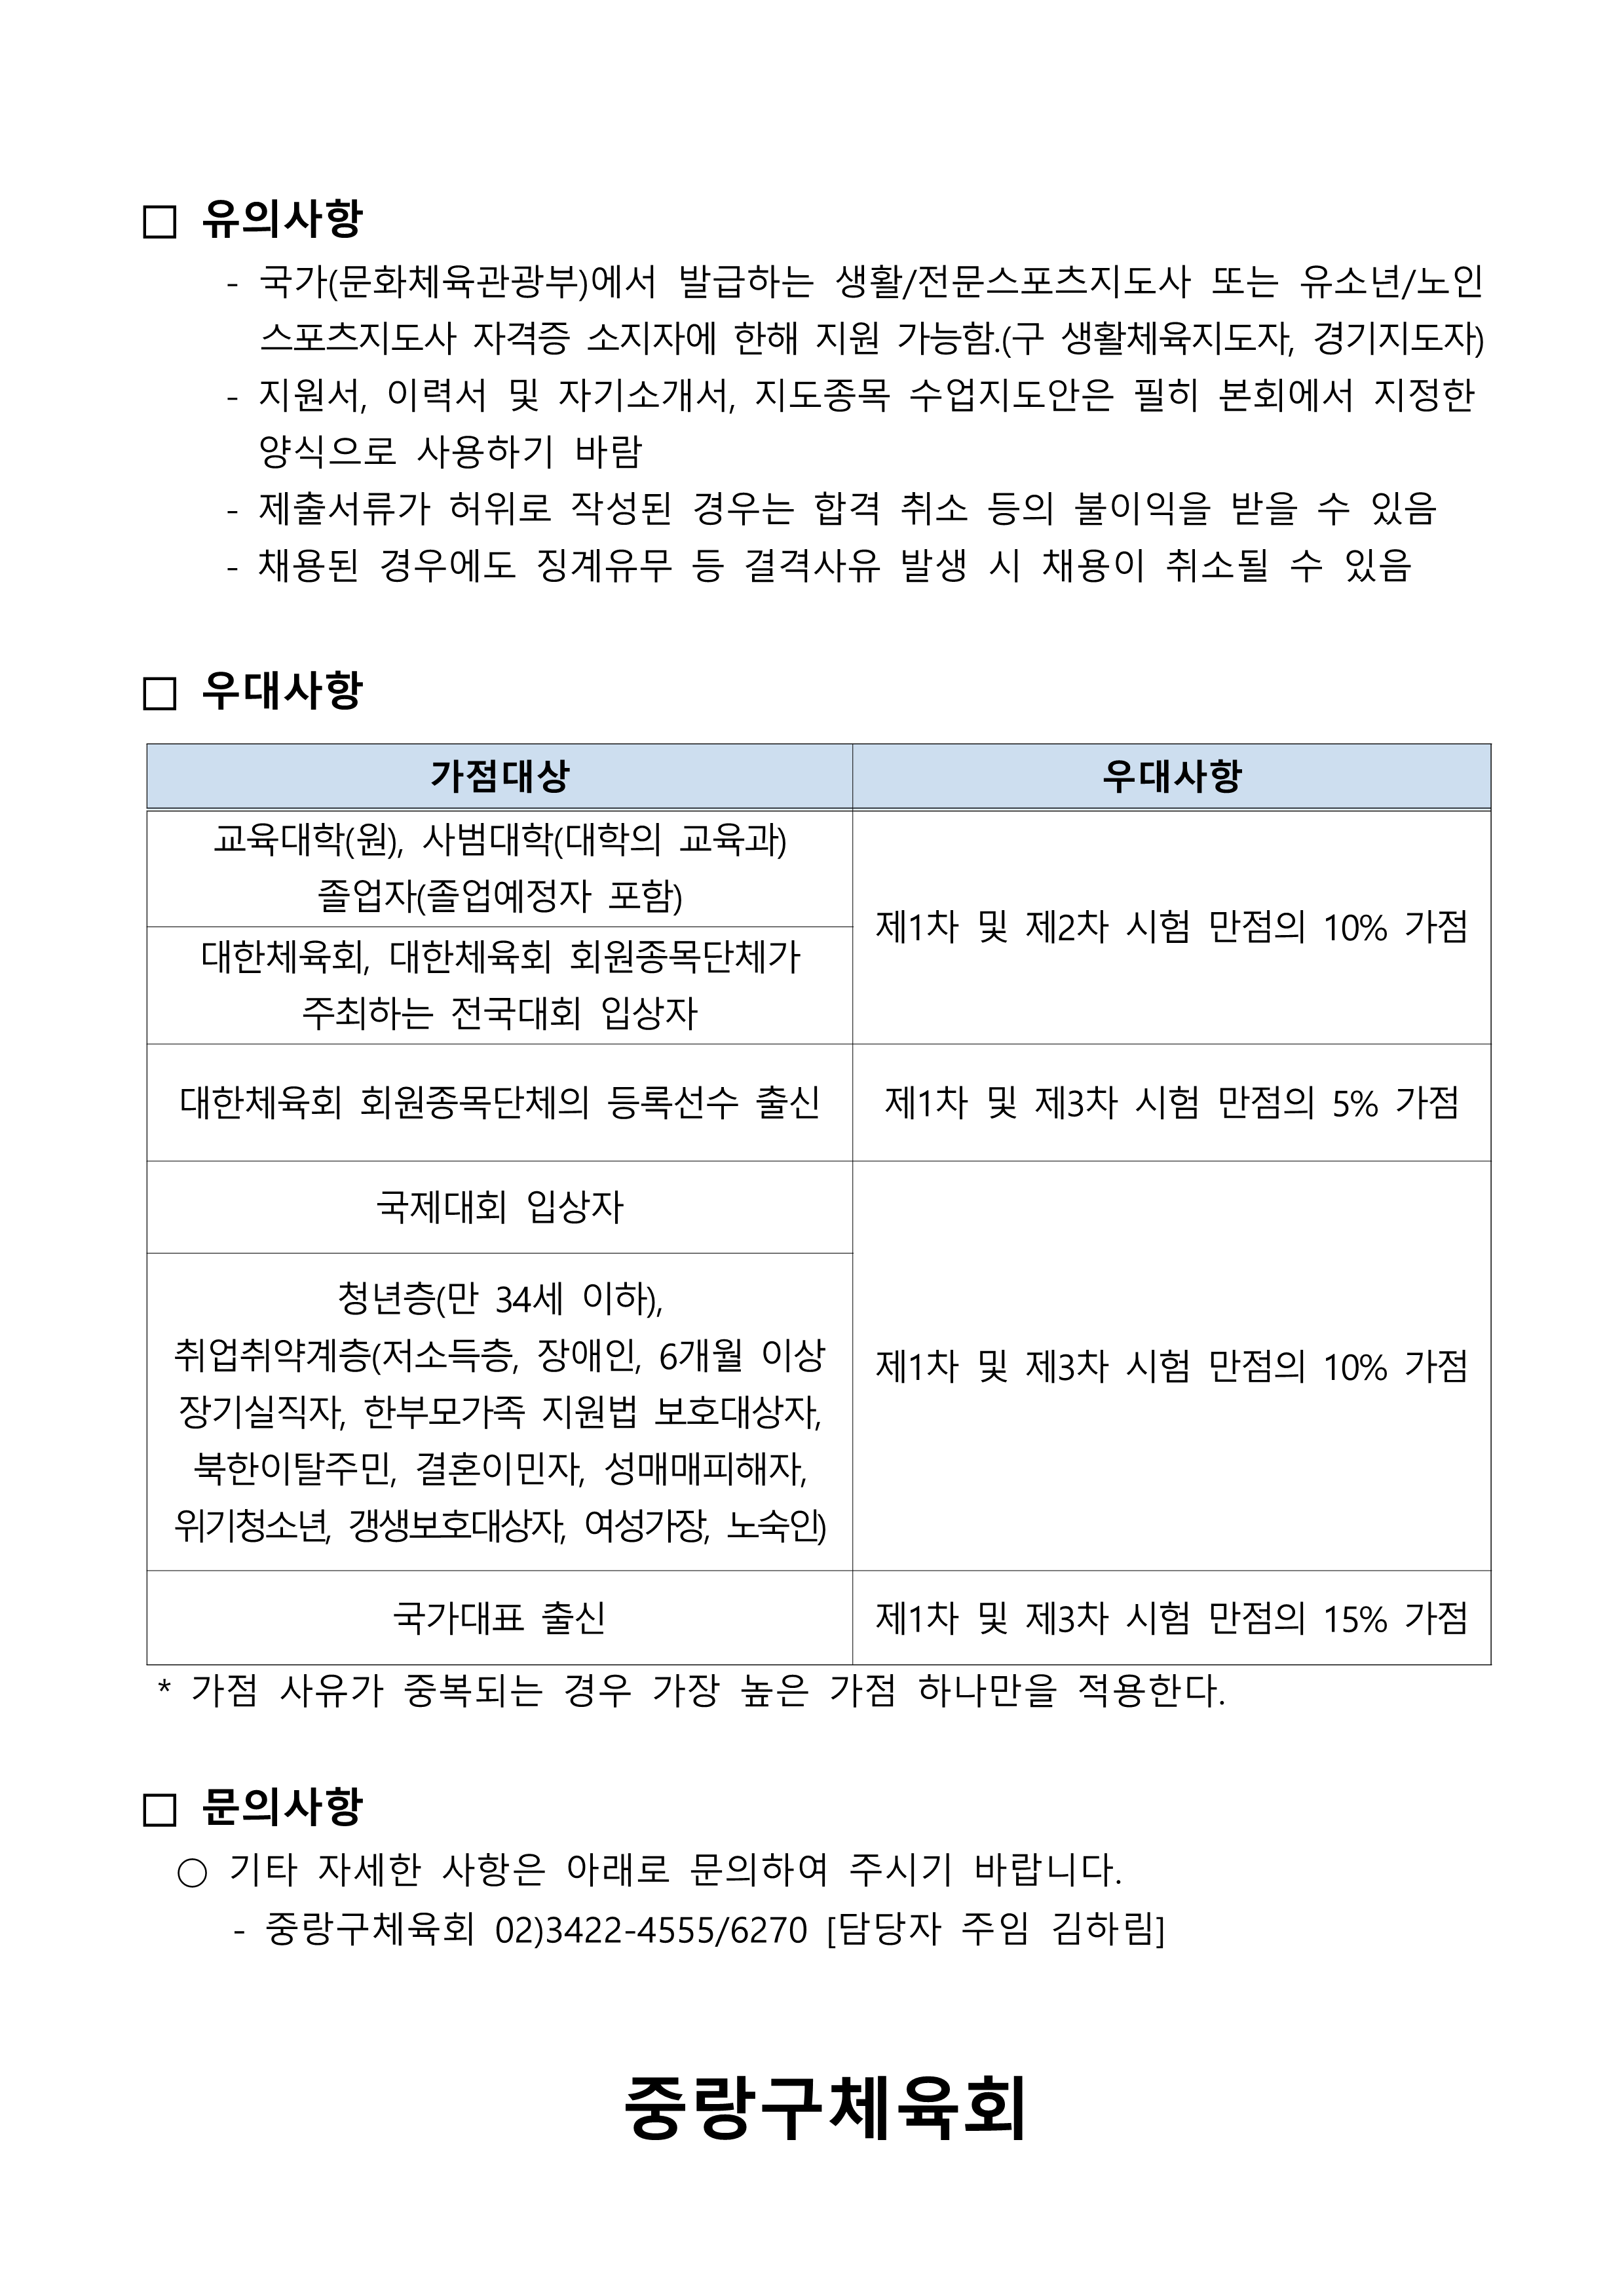 생활체육지도자 모집공고 서식(24년 3월 입사자)-수정본_4.png